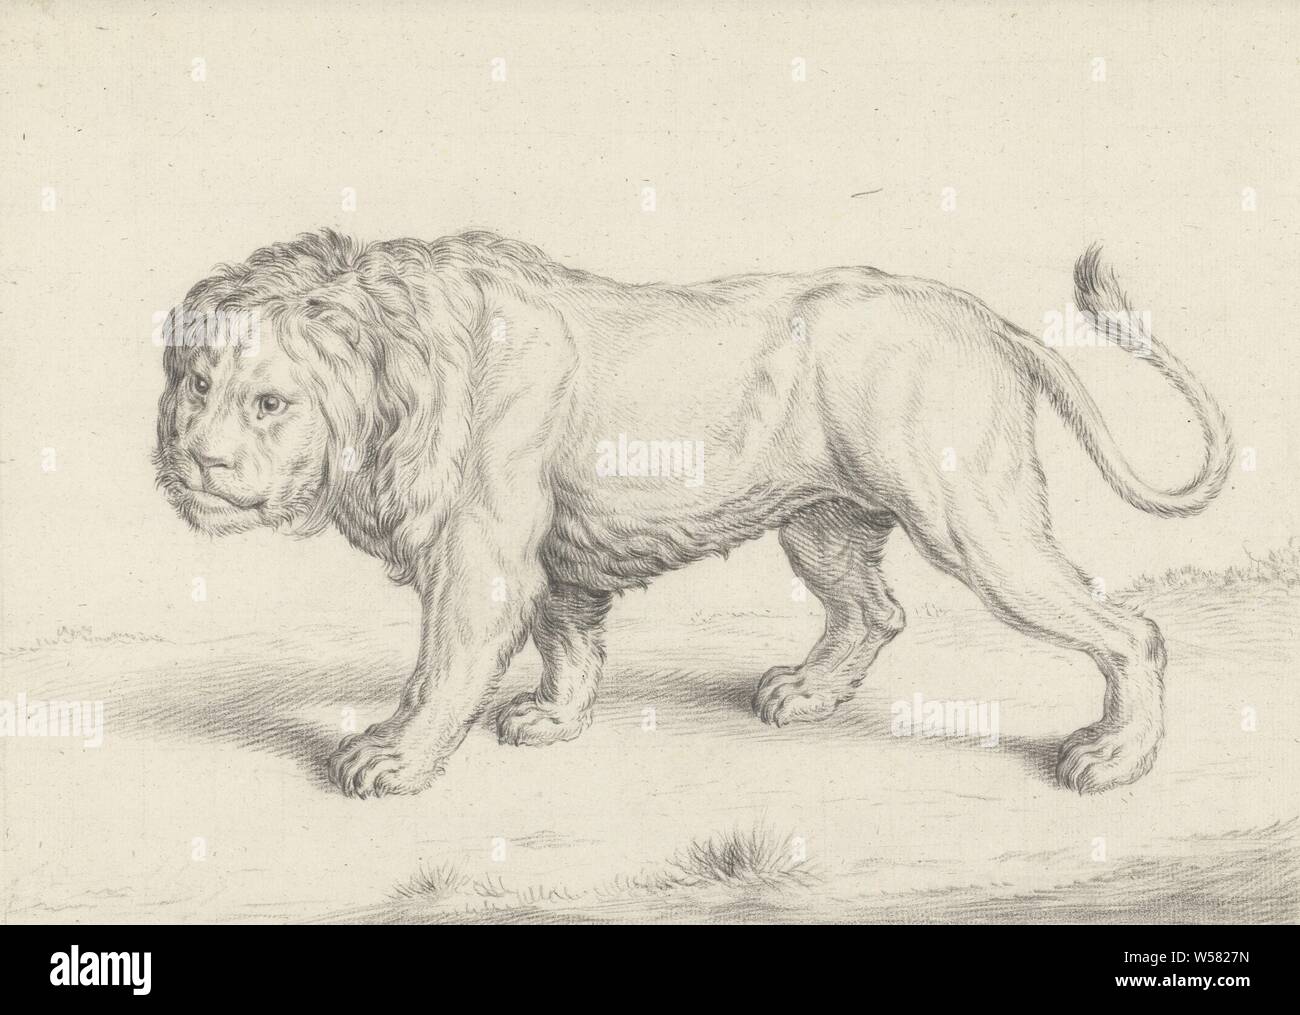 Balade lion, à gauche, des bêtes de proie, les animaux prédateurs : lion, Jean Bernard, 1775 - 1833, papier, crayon, craie, h 260 mm × W 361 mm Banque D'Images